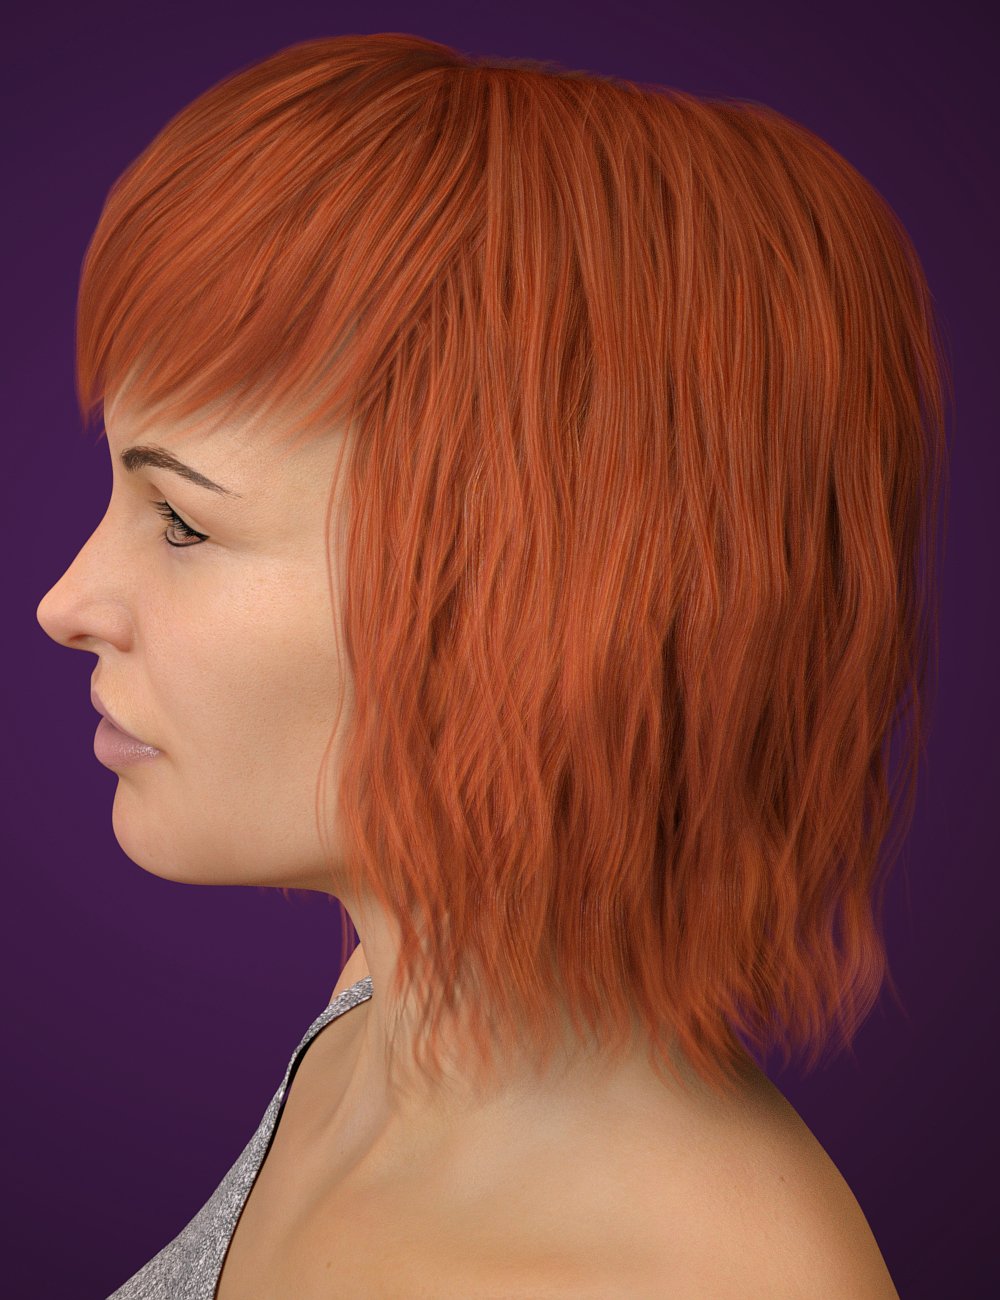 Lenore Hair for Genesis 8 Female(s) by: Toyen, 3D Models by Daz 3D